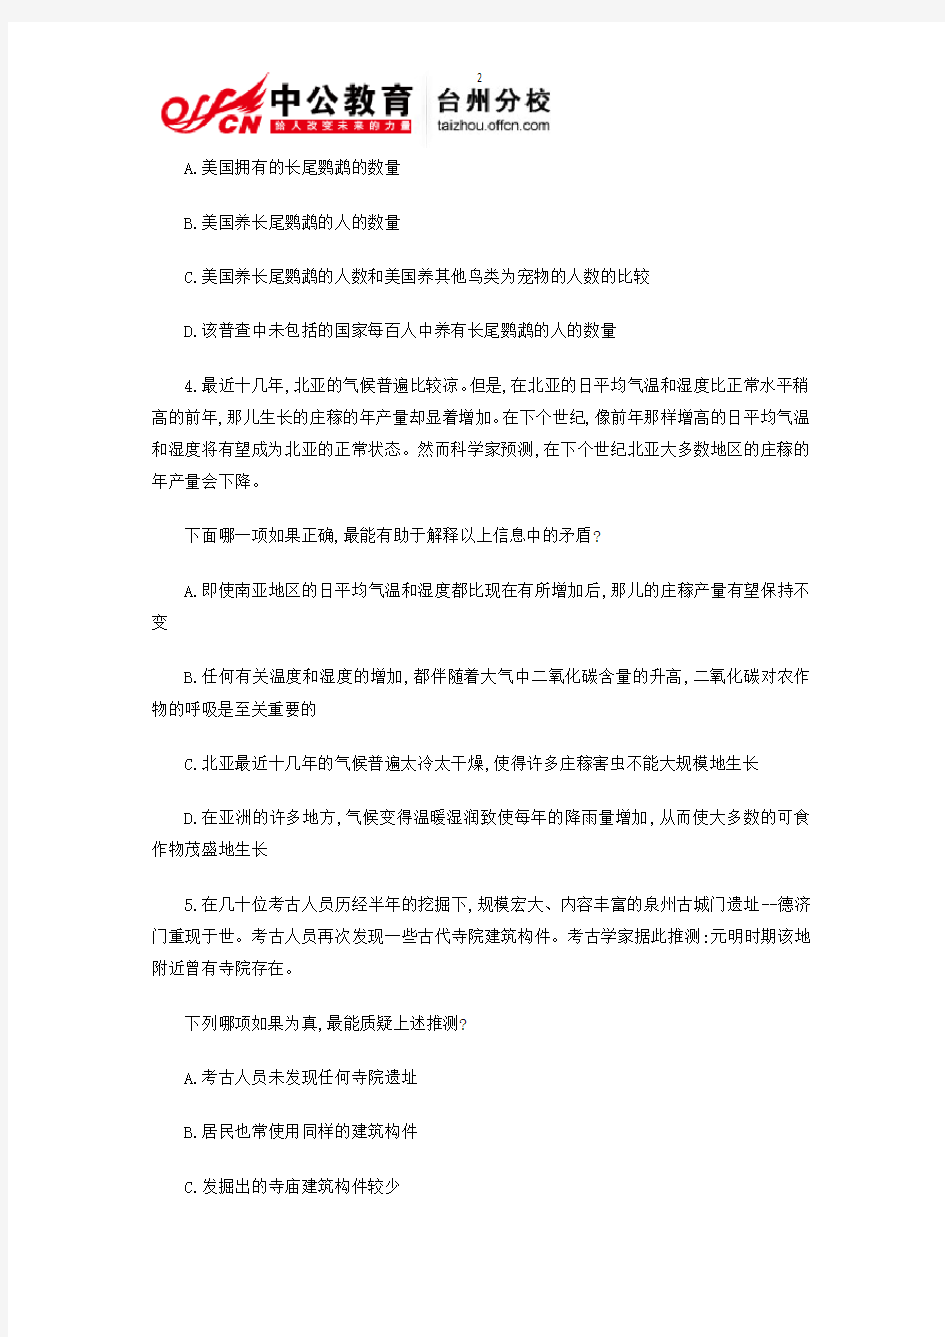 台州2015国家公务员考试行测—逻辑判断练习及答案7月22日